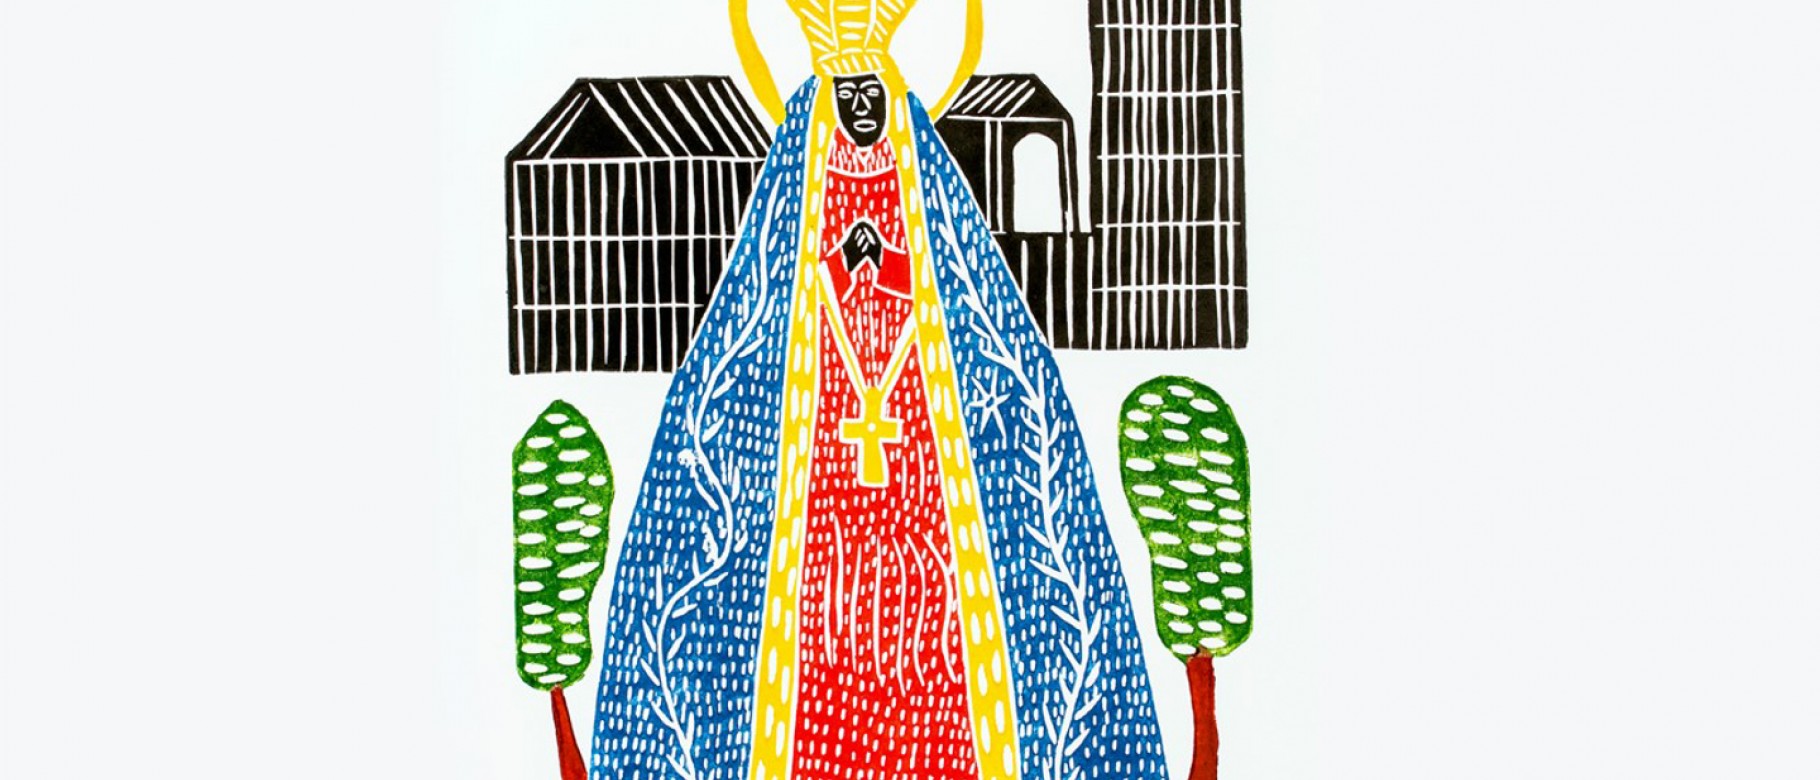 Nossa Senhora de Aparecida (Our Lady of Aparecida, Patroness of Brazil), by J. Borges, colored woodblock print, 26 x 19 inches, 